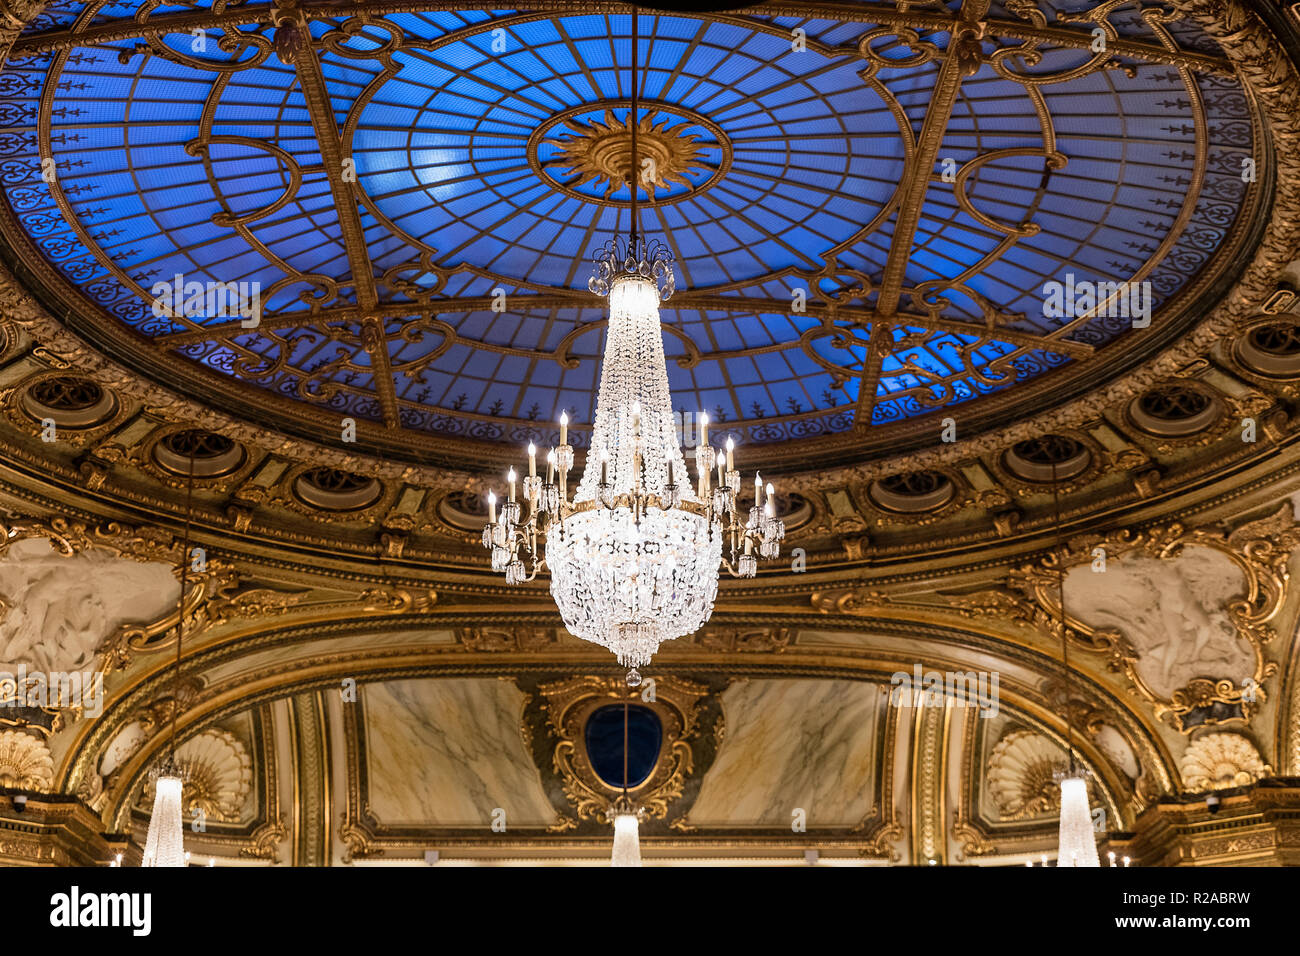 Interior architectural detail of the Casino de Monte Carlo, Monaco. Stock Photo